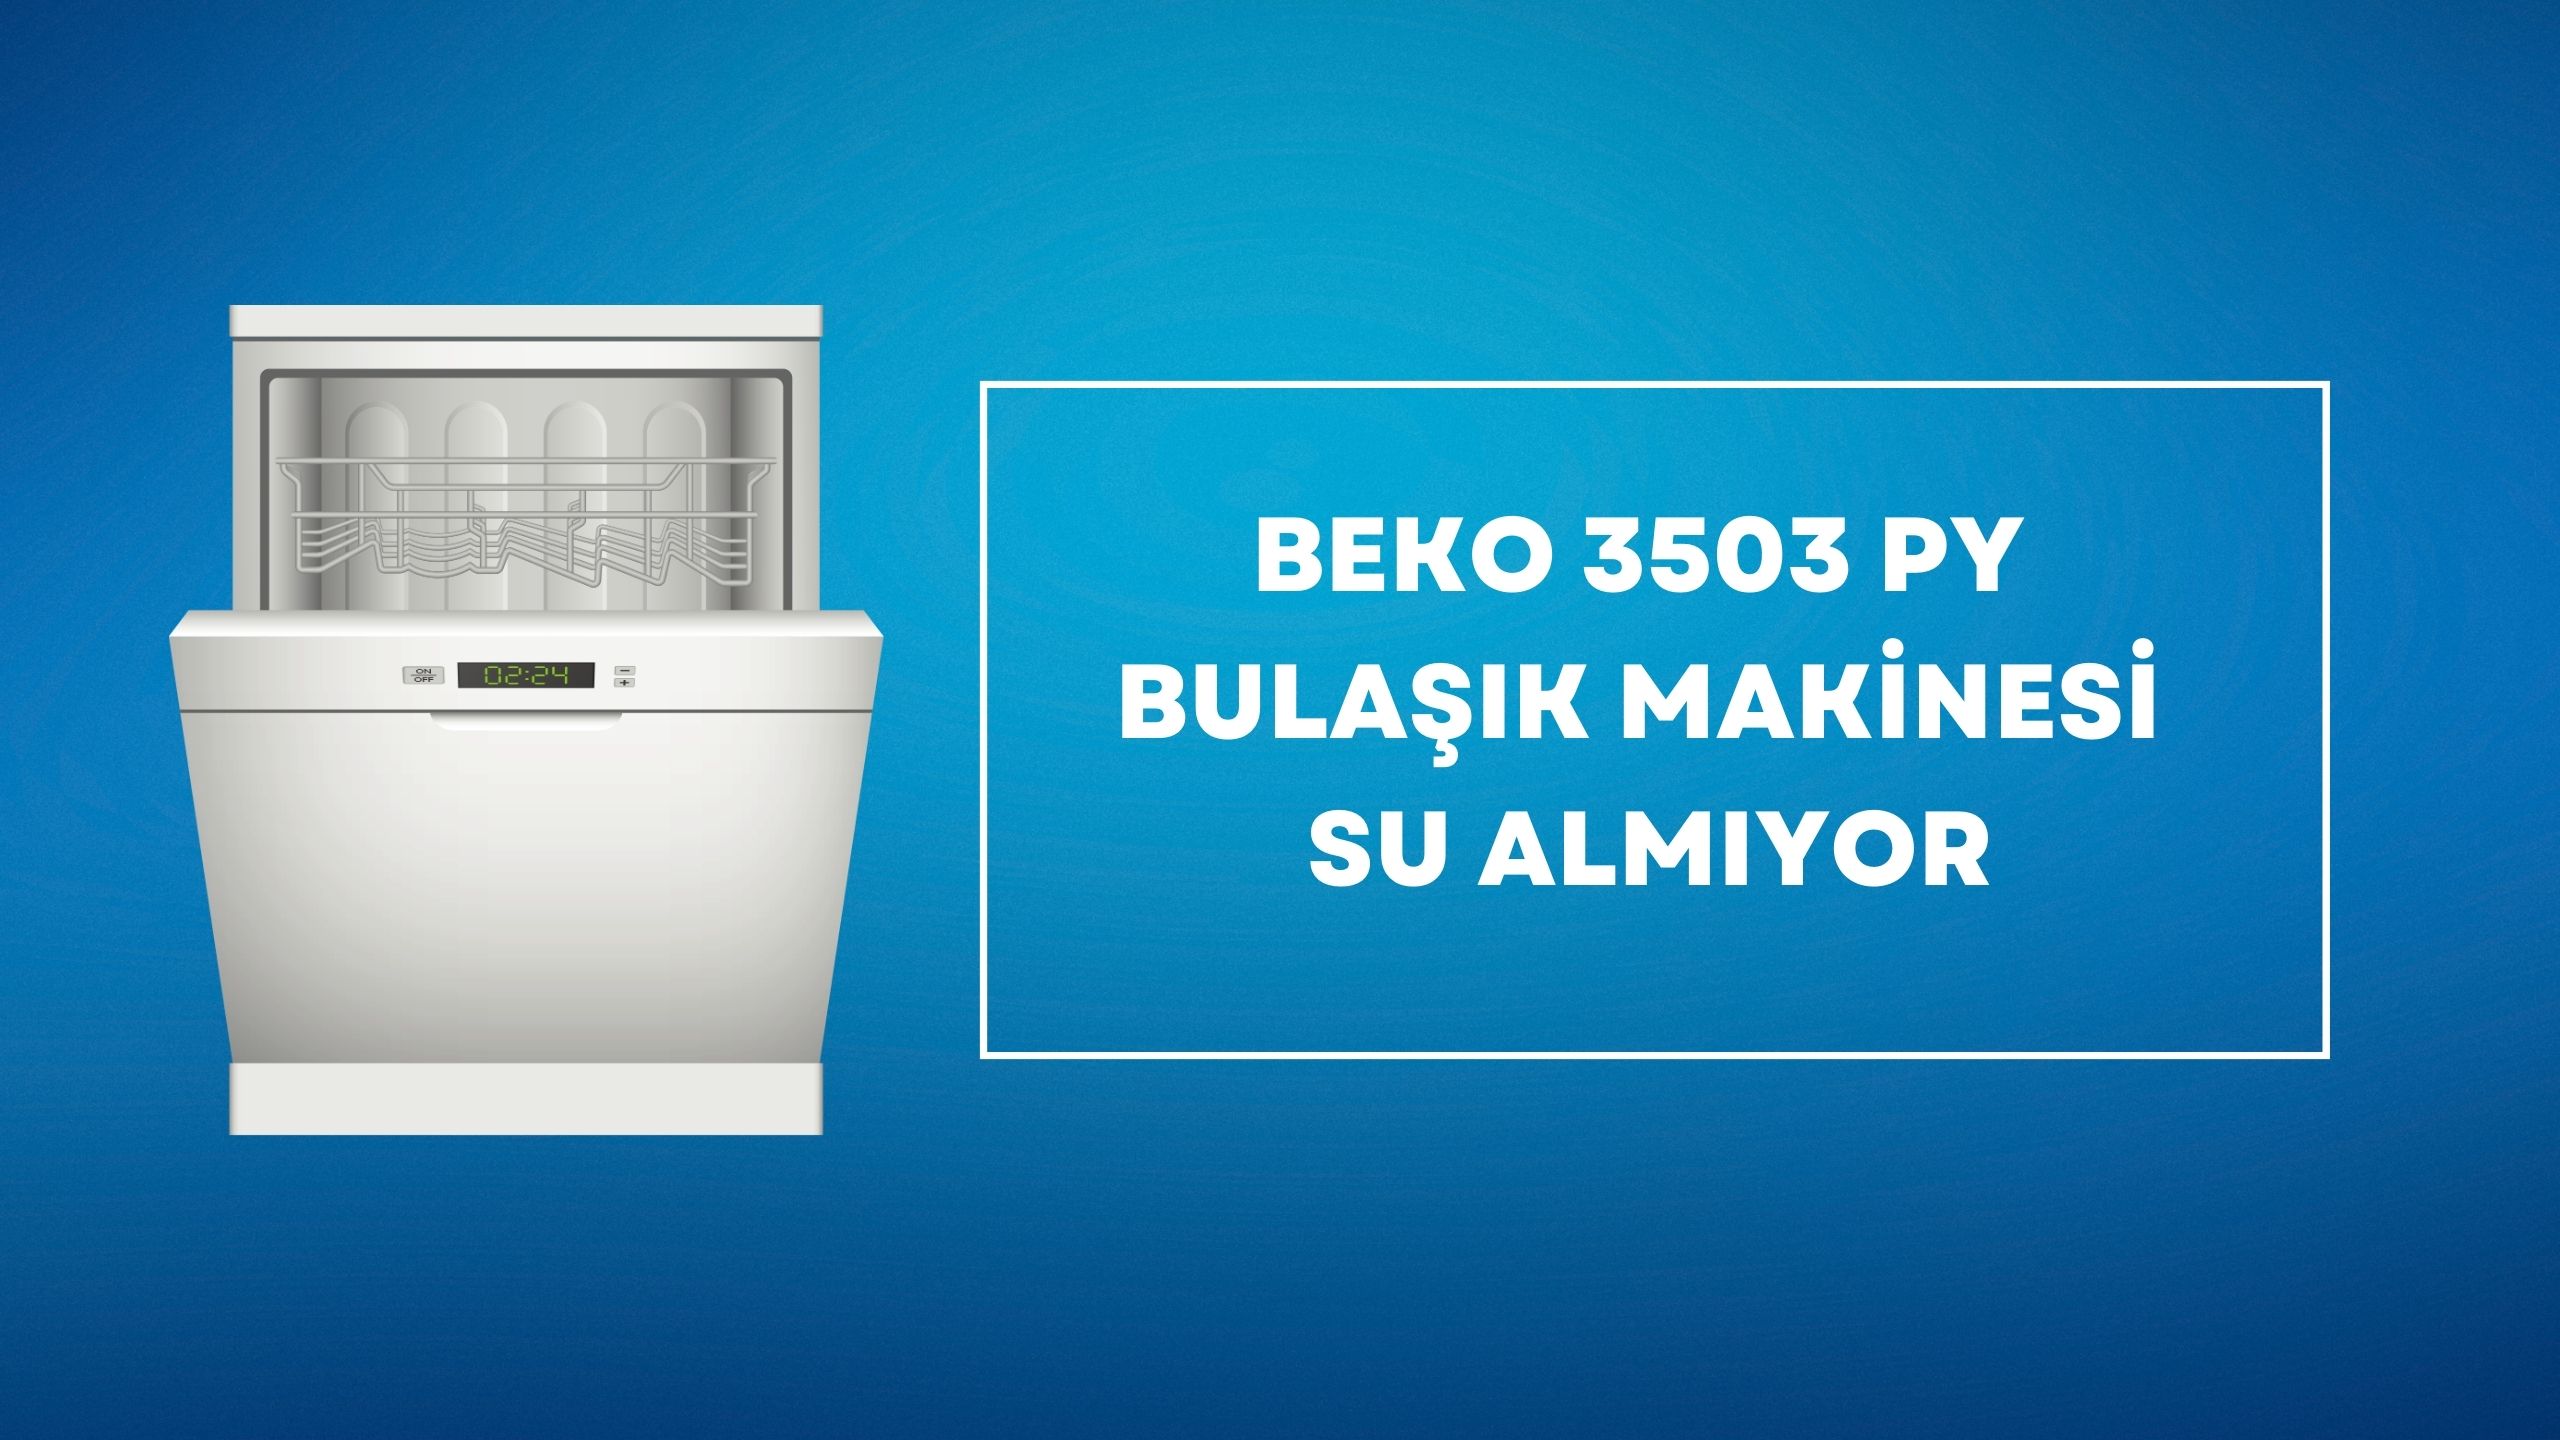 Beko 3503 PY Bulaşık Makinesi Su Almıyor